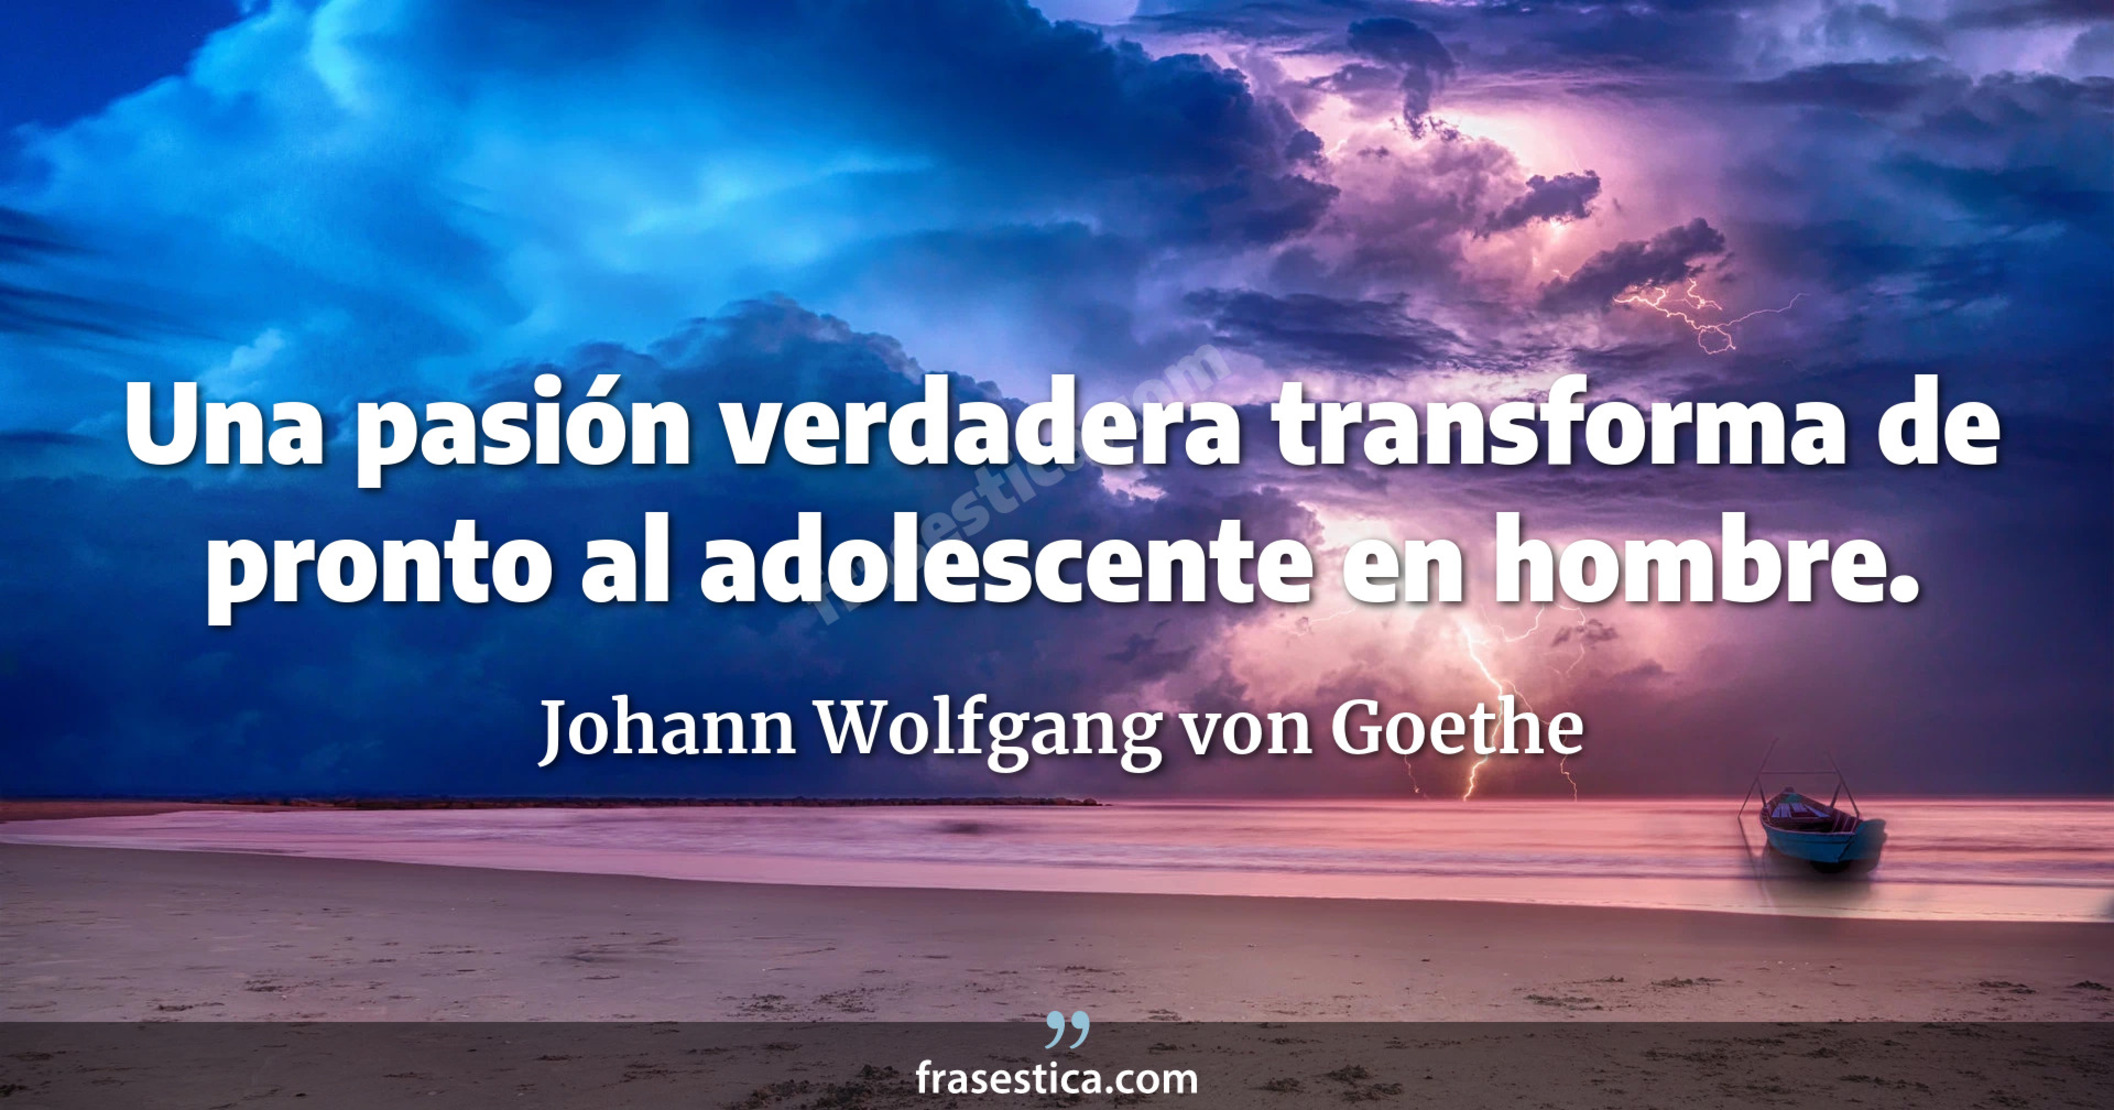 Una pasión verdadera transforma de pronto al adolescente en hombre. - Johann Wolfgang von Goethe